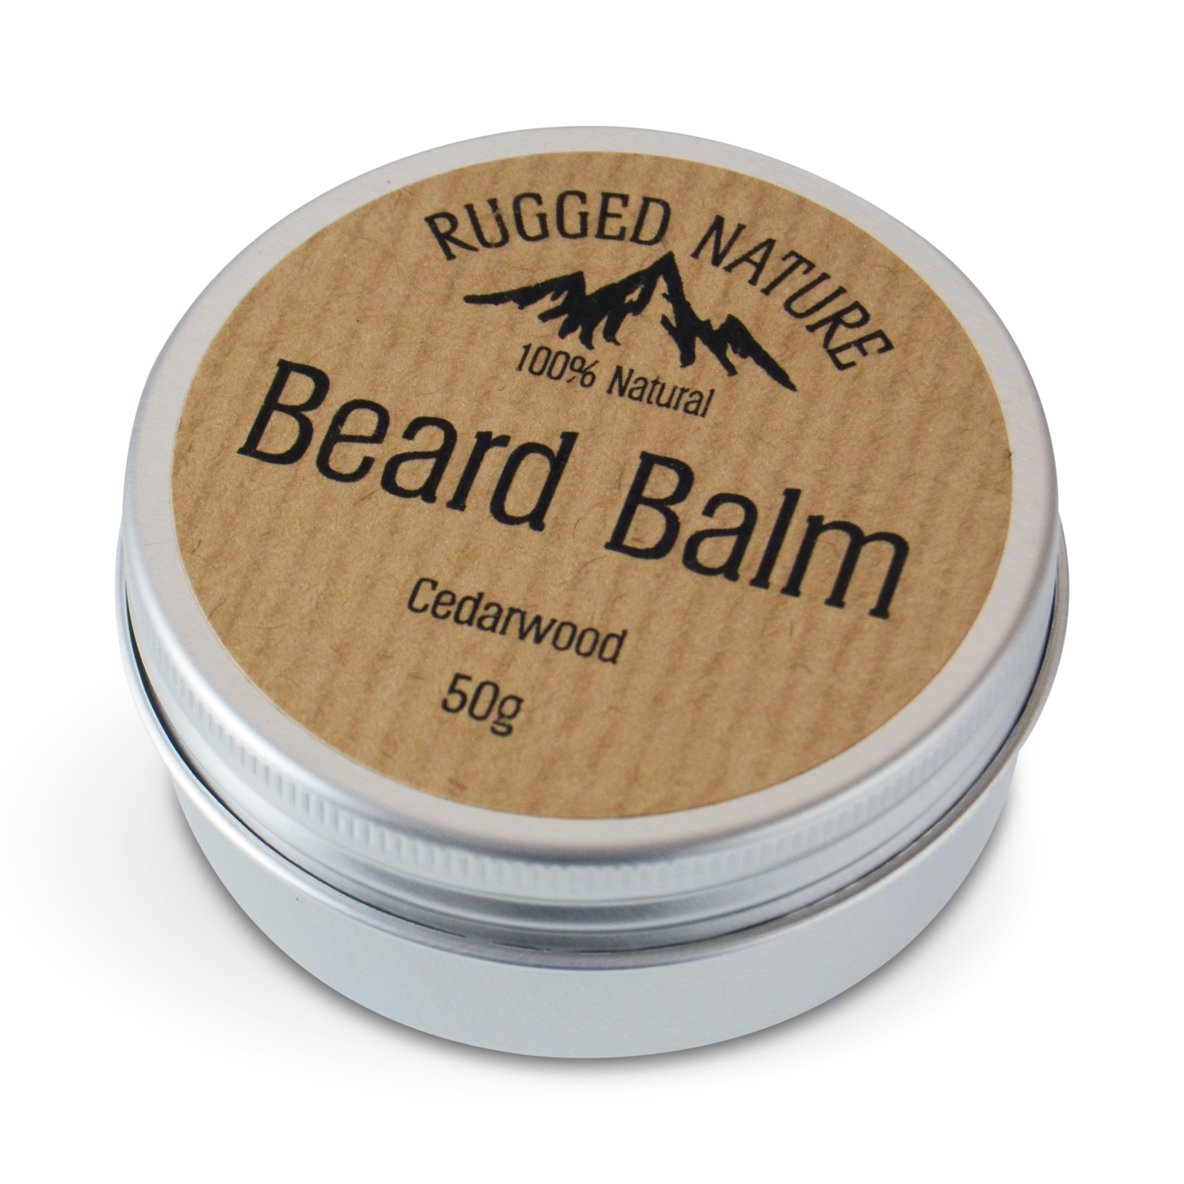 Rugged Nature - Beard Balm